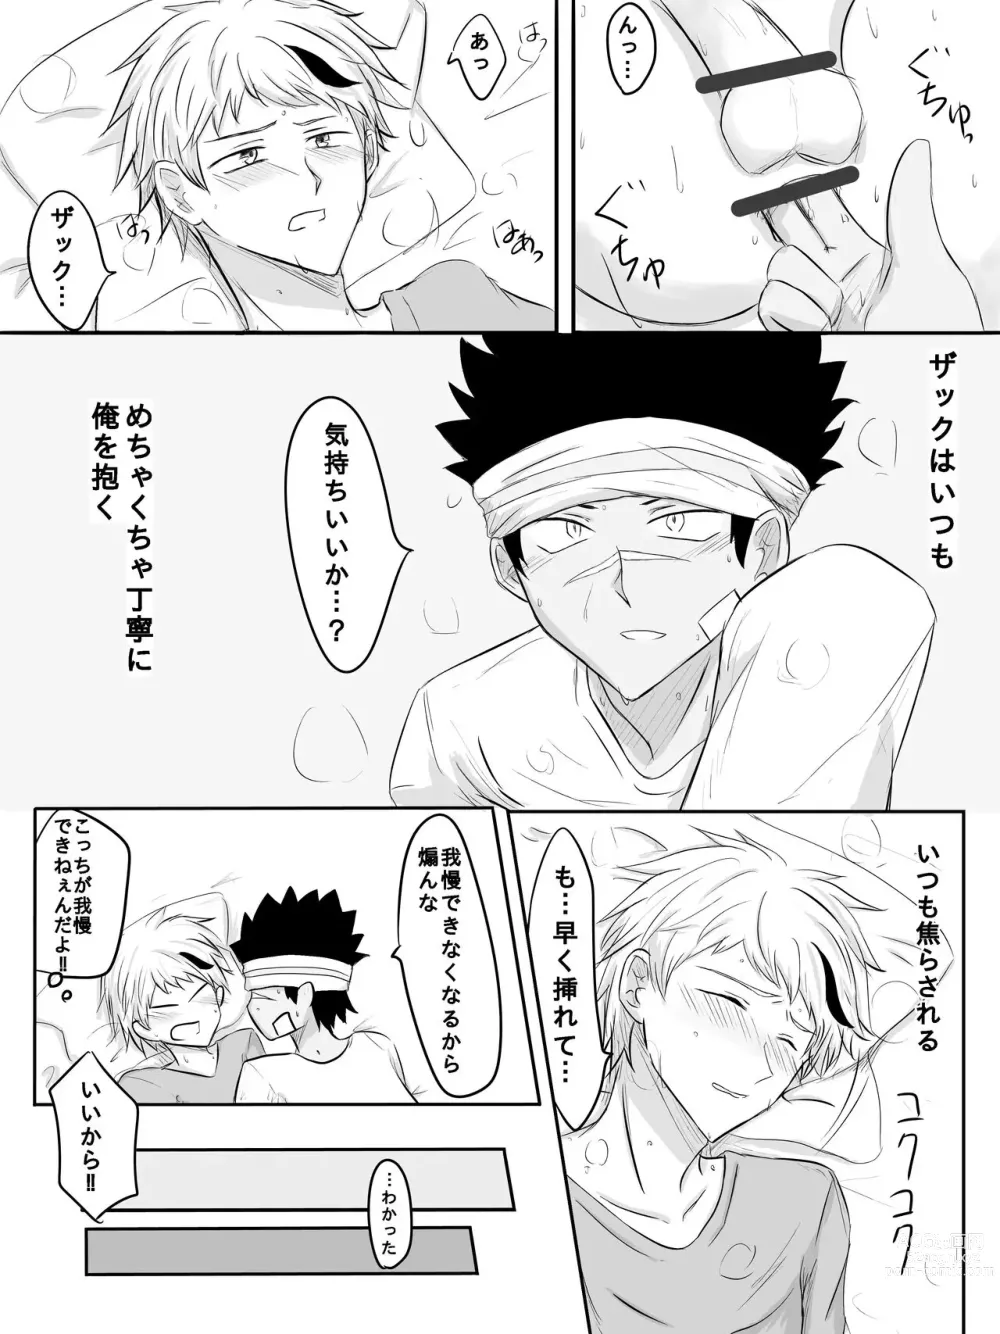 Page 4 of doujinshi Orizakuori Manga